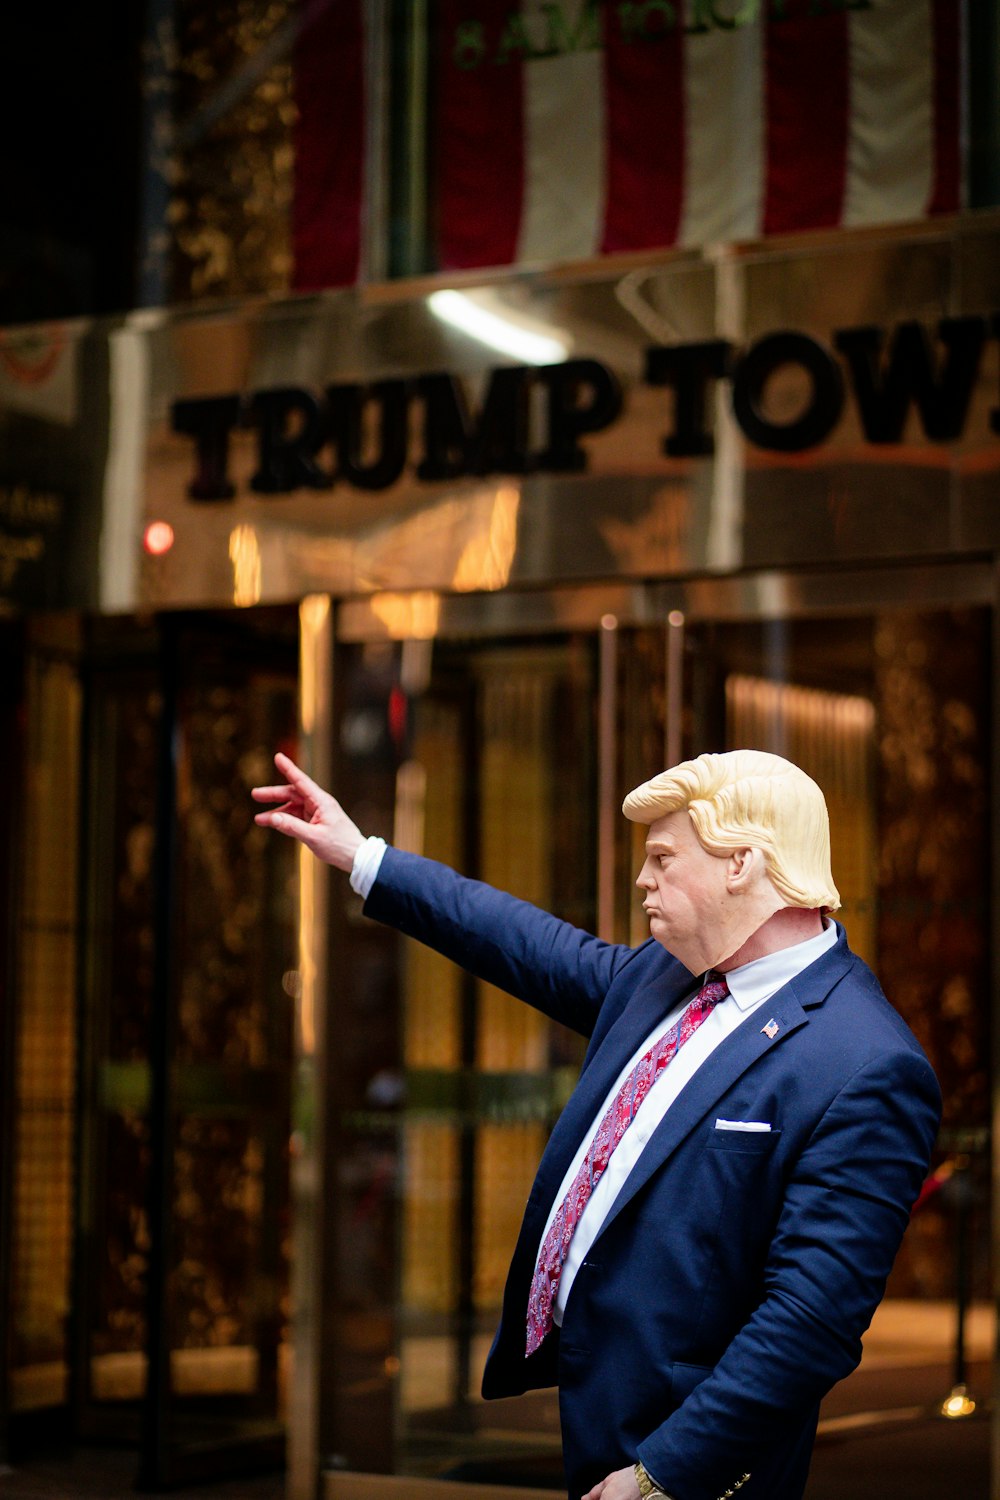 Un hombre con traje y corbata parado frente a un edificio Trump